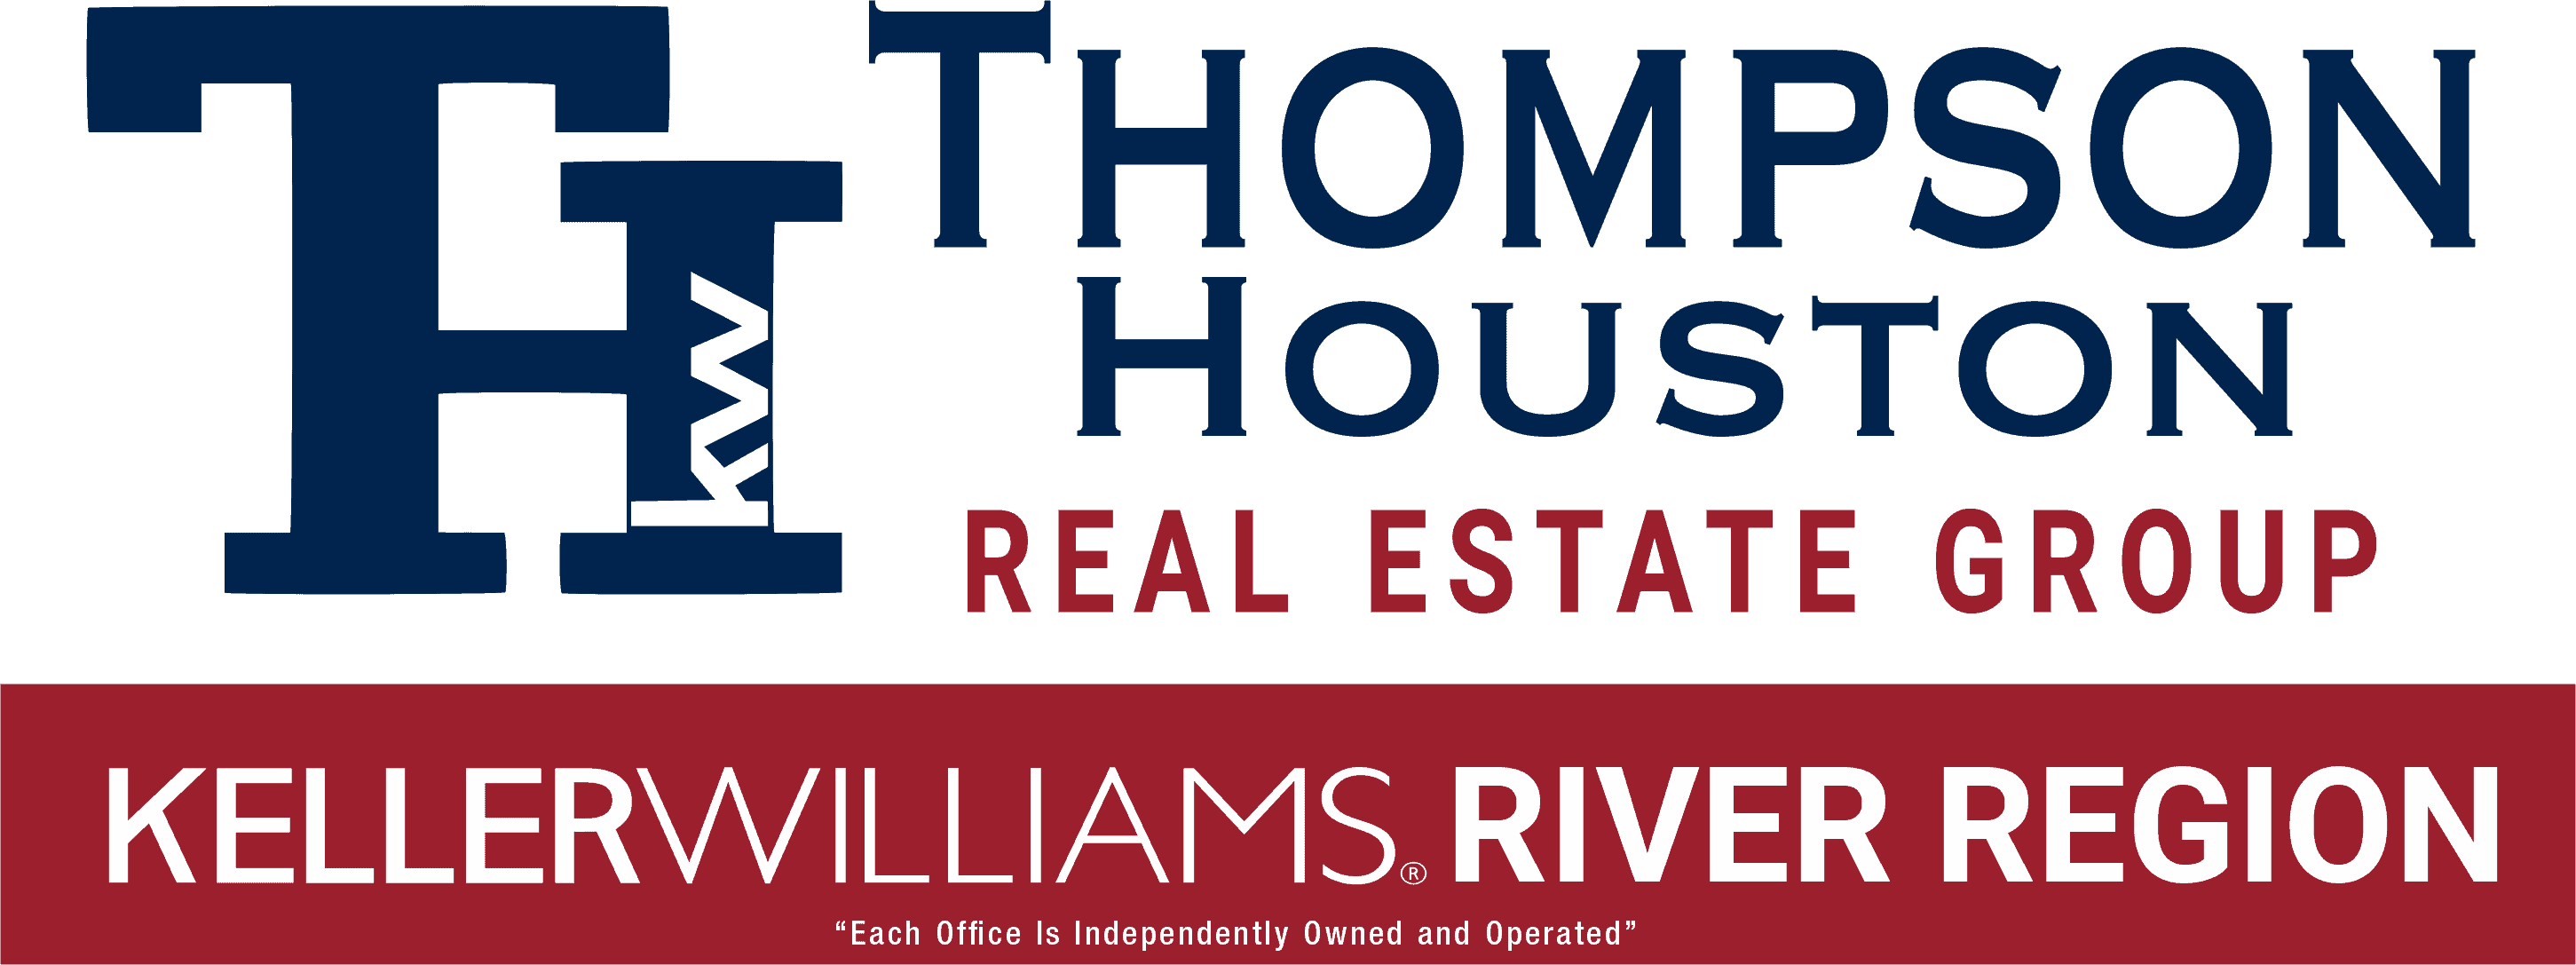 Thompson Houston Real Estate Group Logo